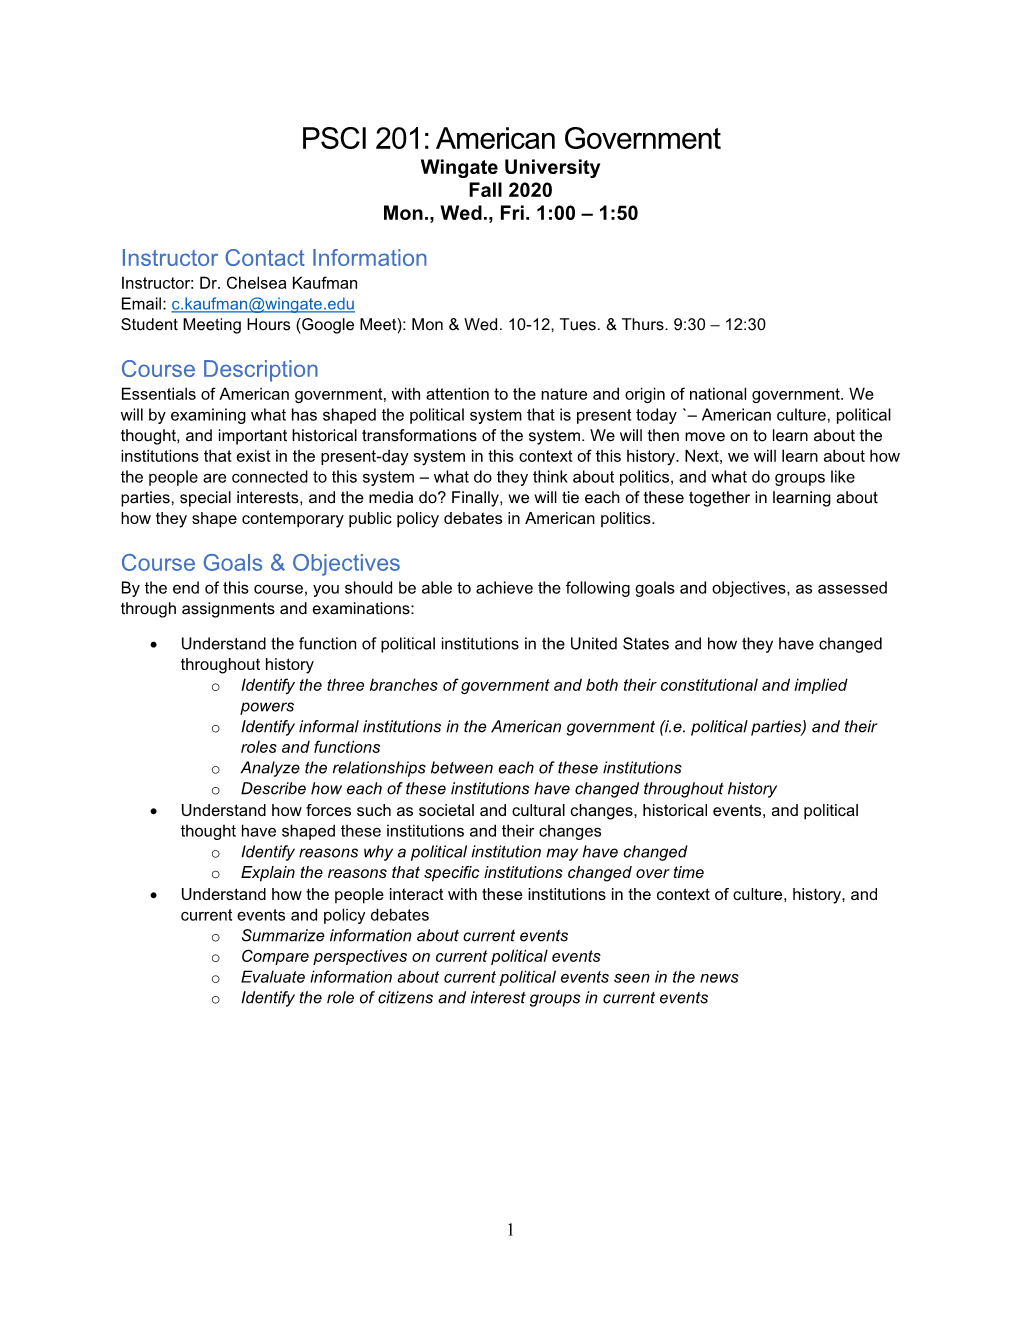 PSCI 201: American Government Wingate University Fall 2020 Mon., Wed., Fri